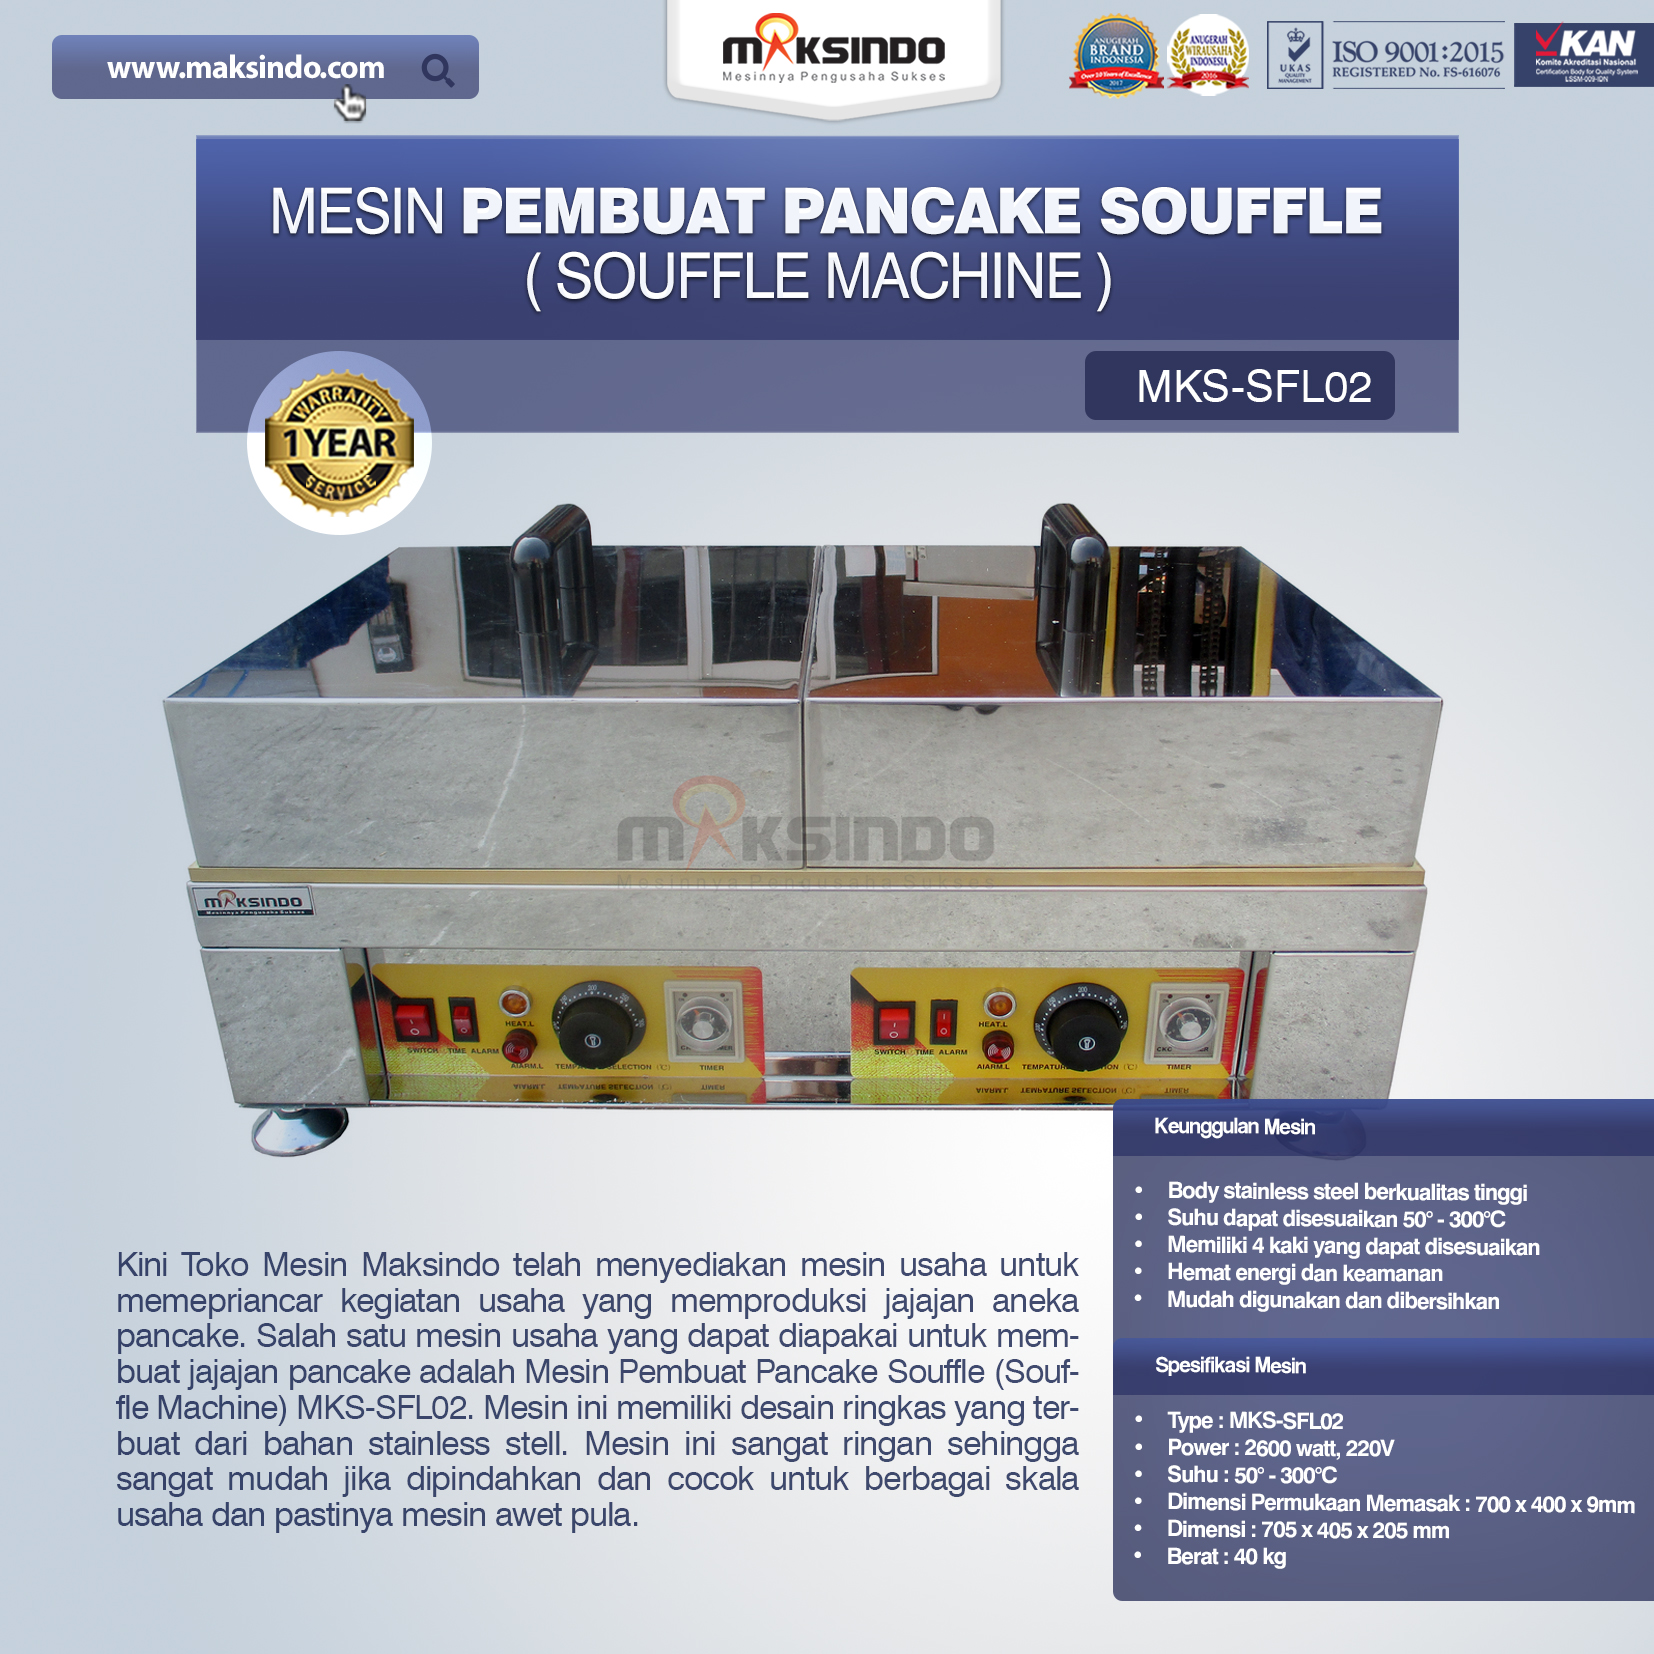 Jual Mesin Pembuat Pancake Souffle (Souffle Machine) MKS-SFL02 di Bali